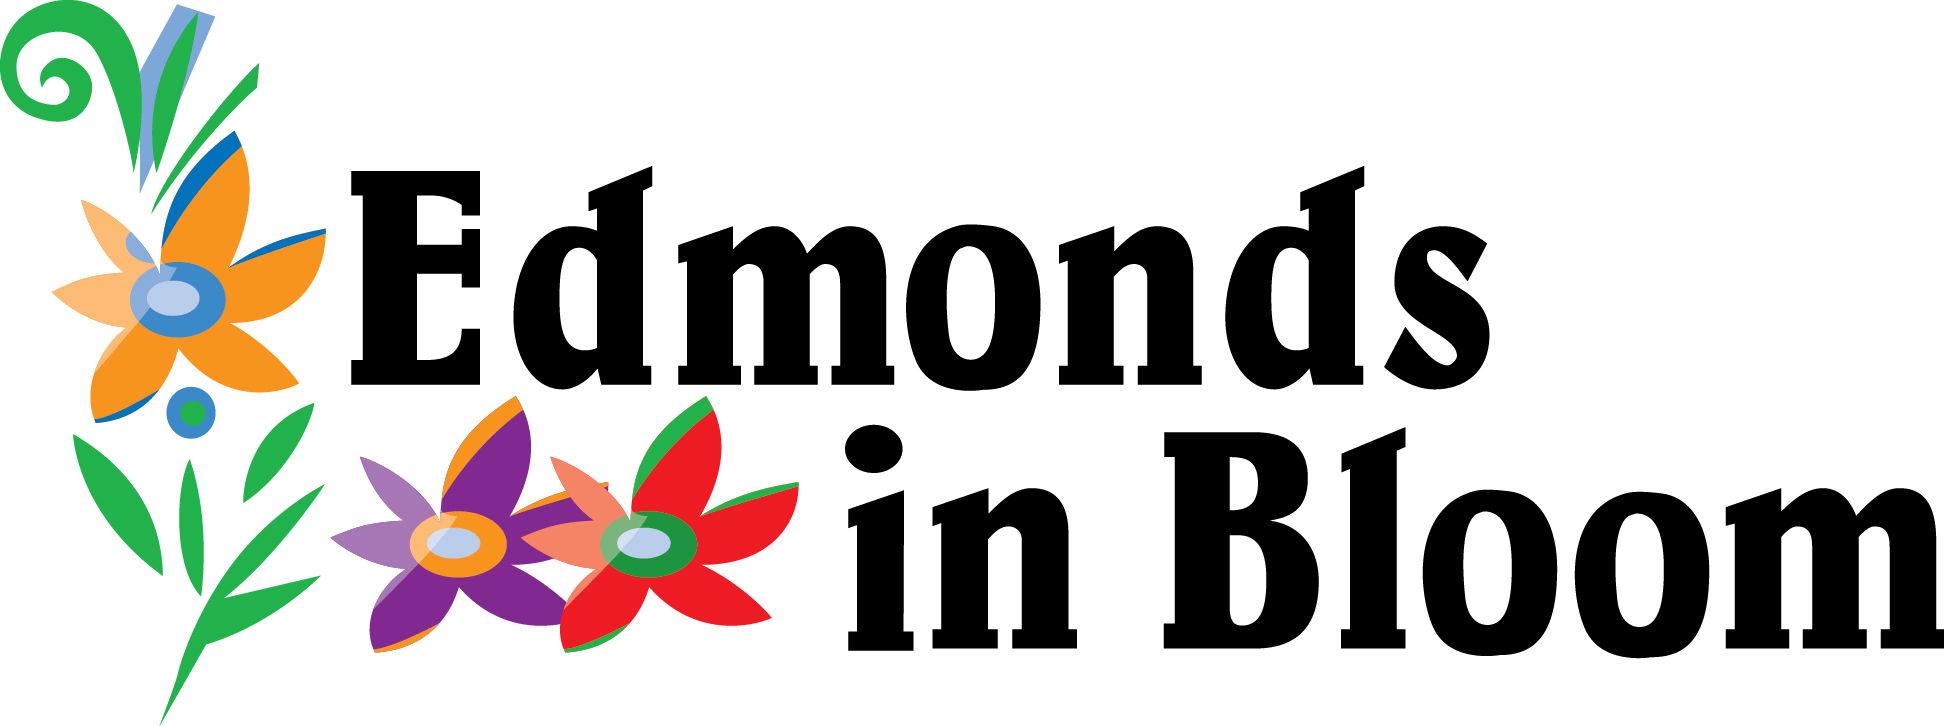 Edmonds in Bloom